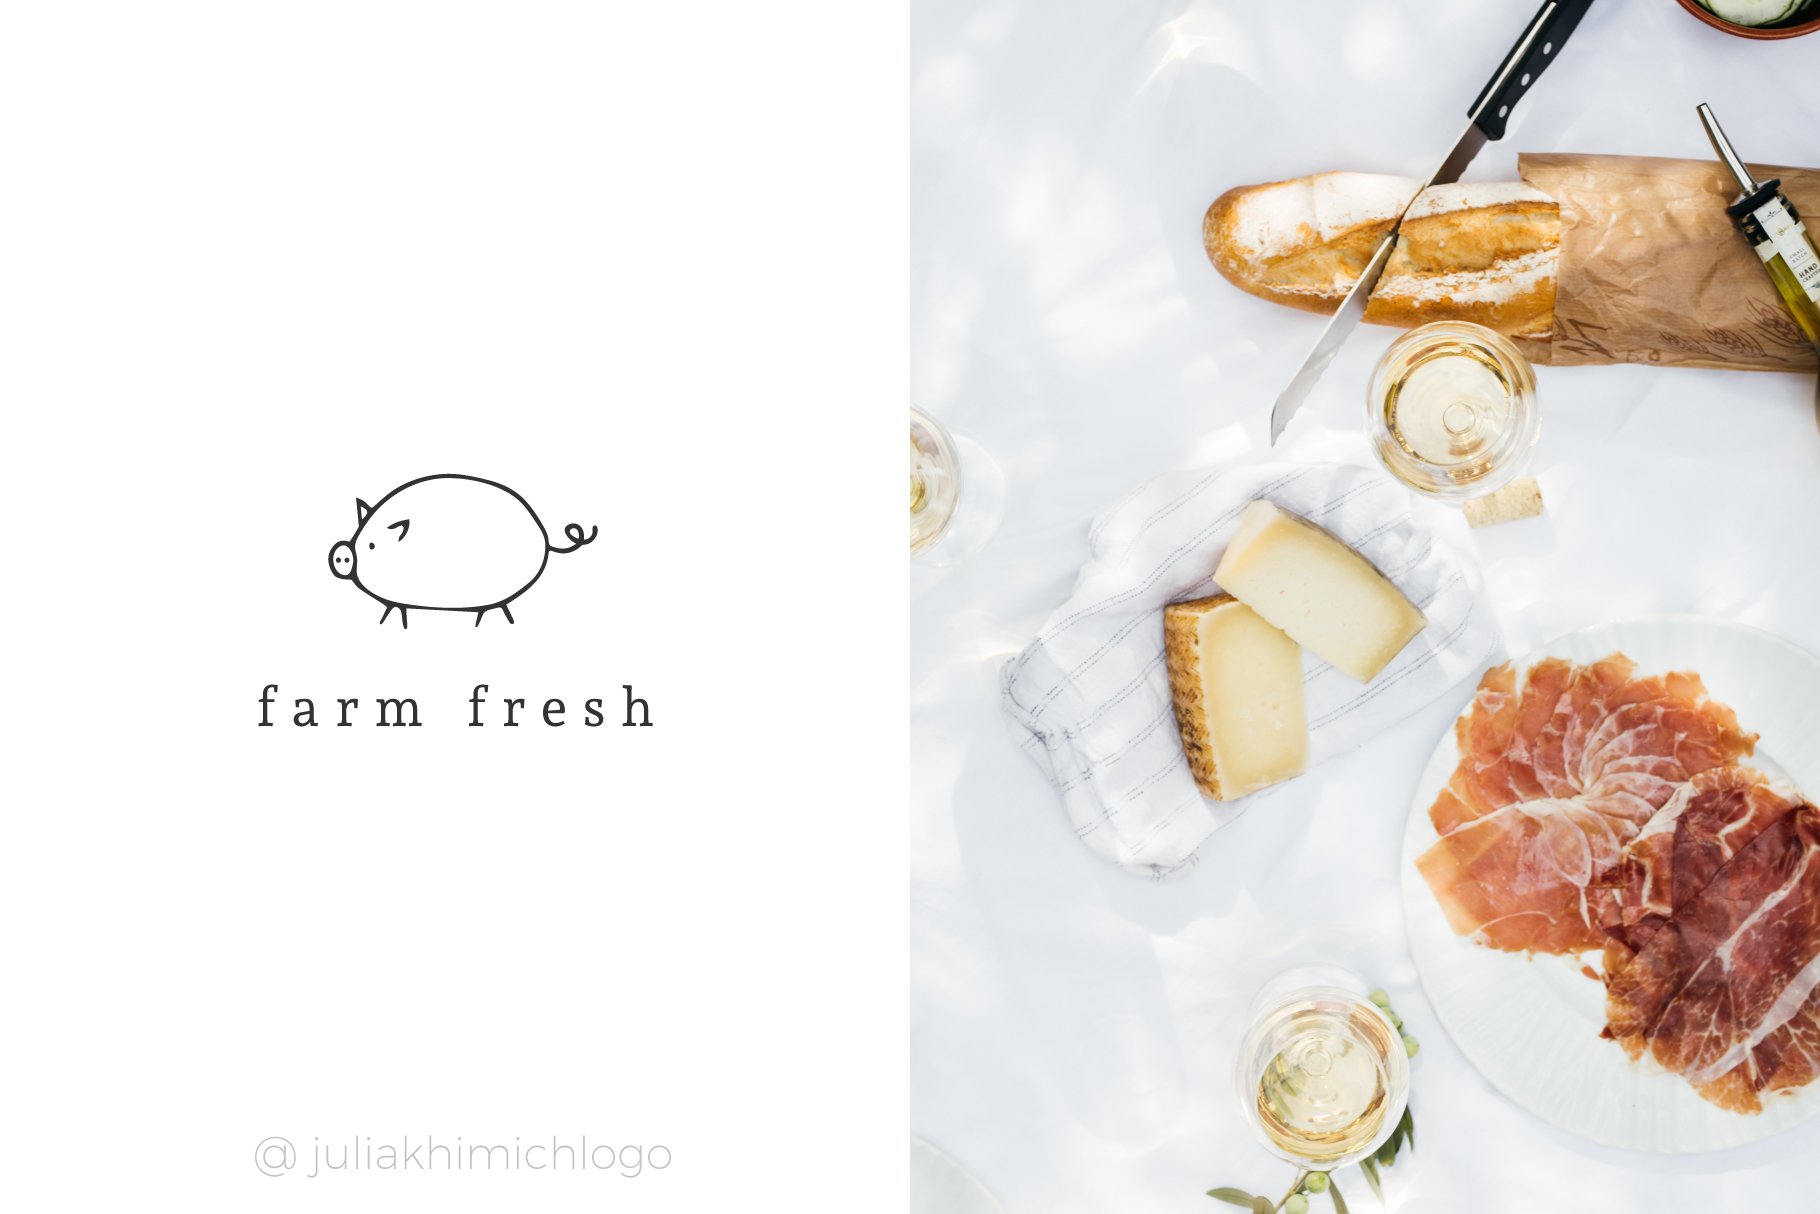 So tasty logo for farm fresh products.